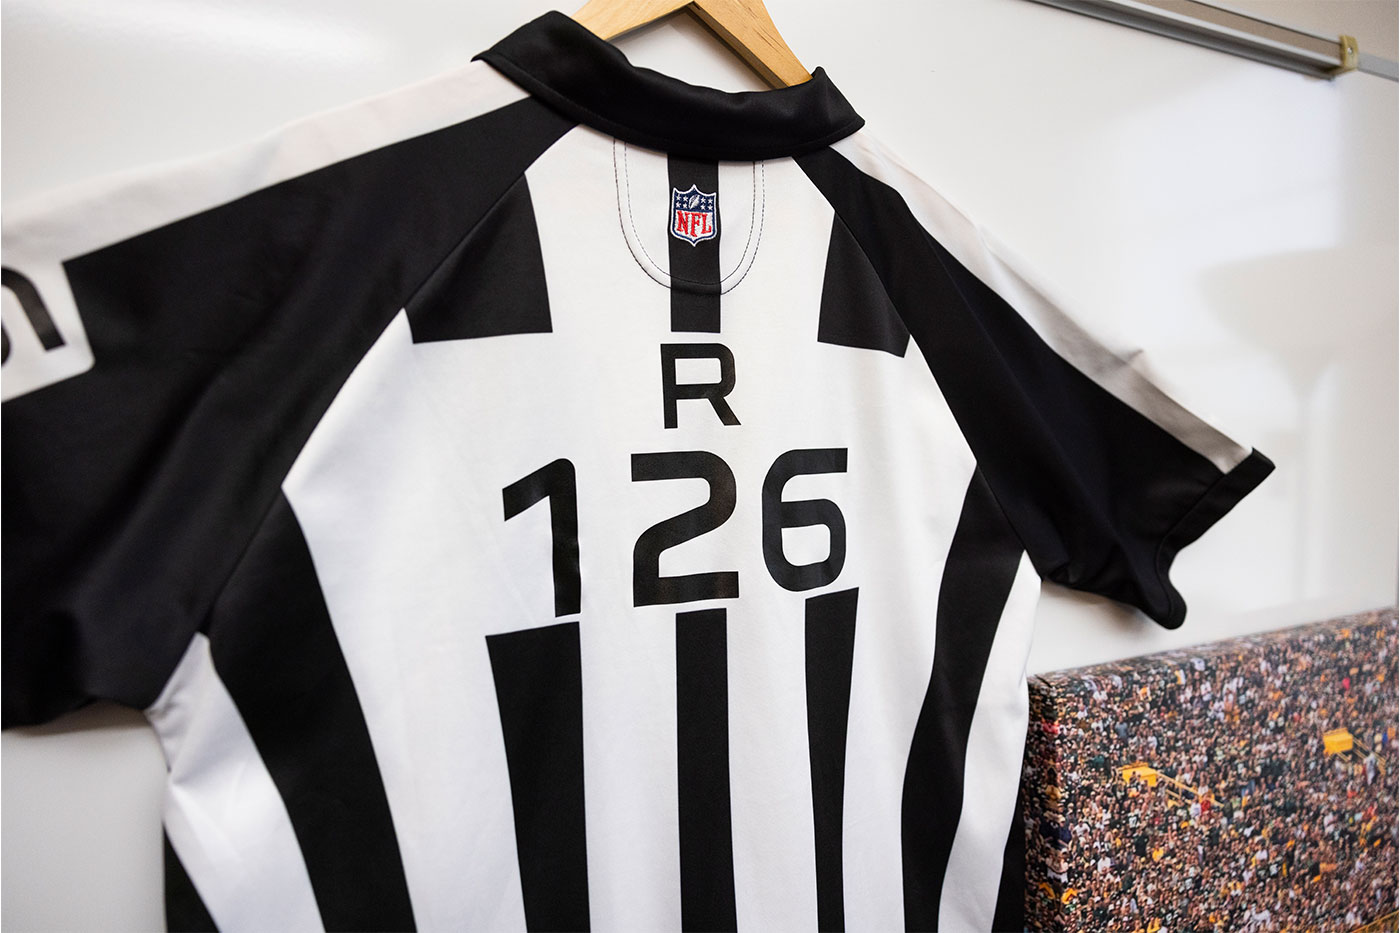 NFL referee jersey